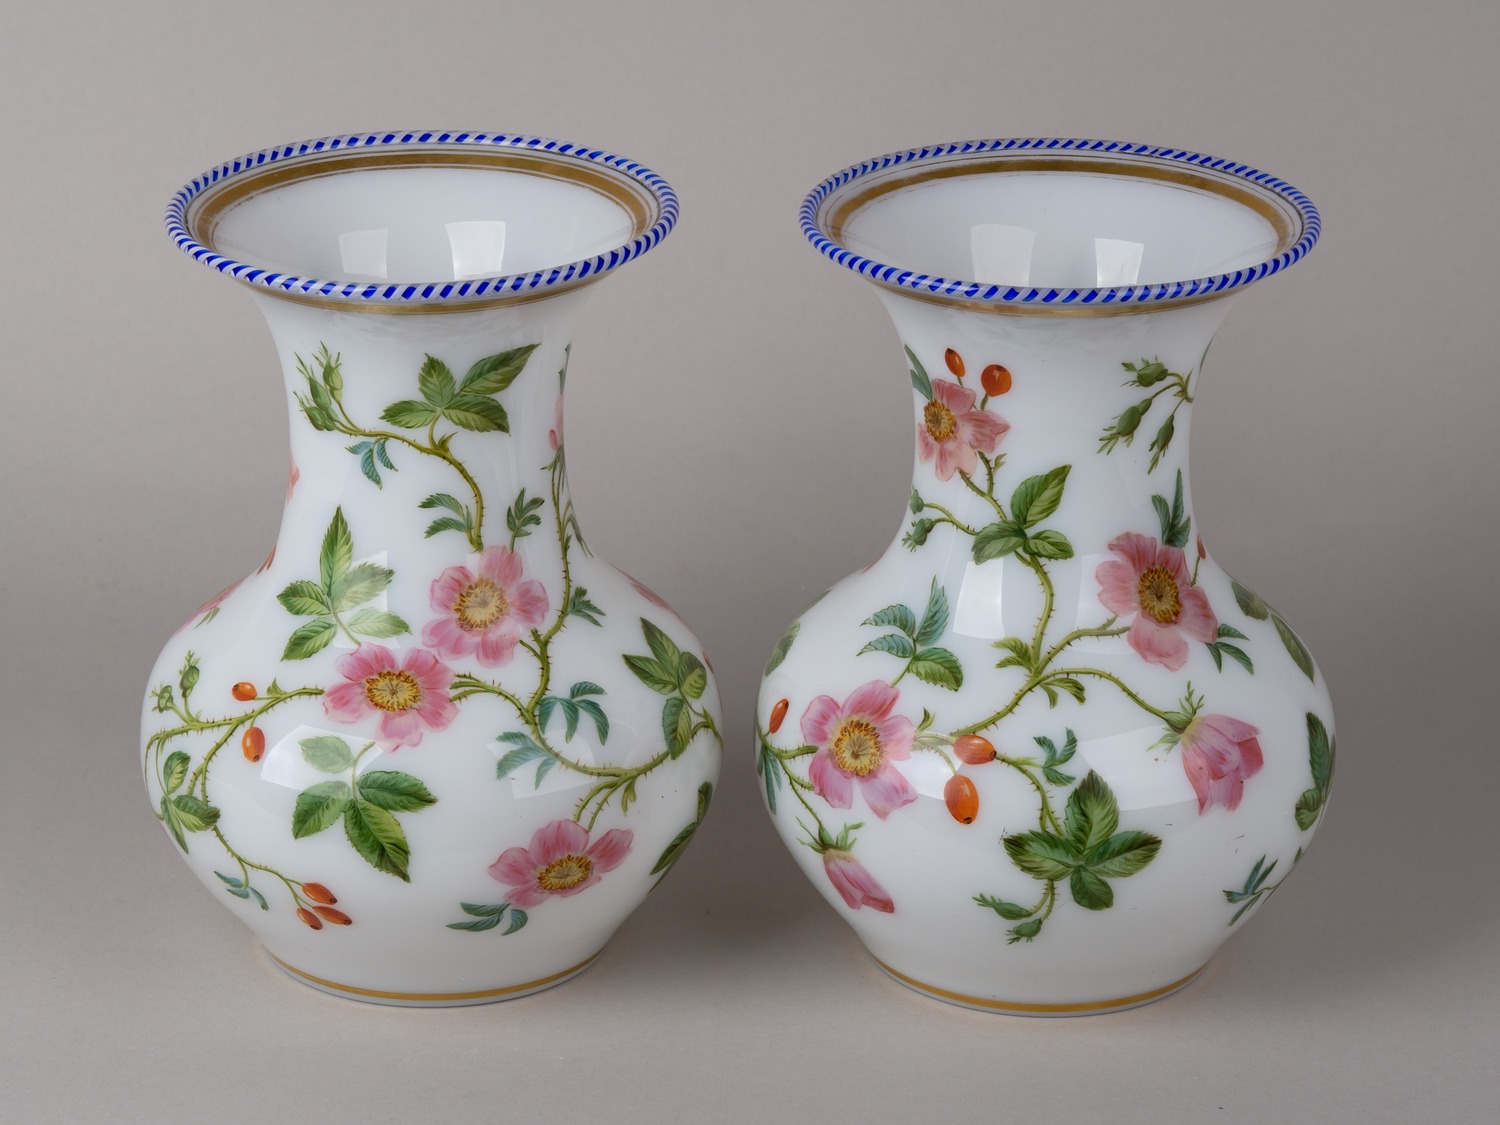 Парные вазы с эмалями «Дикая роза».<br>Франция, фирма Baccarat, мастерская Jean-Francois Robert, начало 1840-х годов.